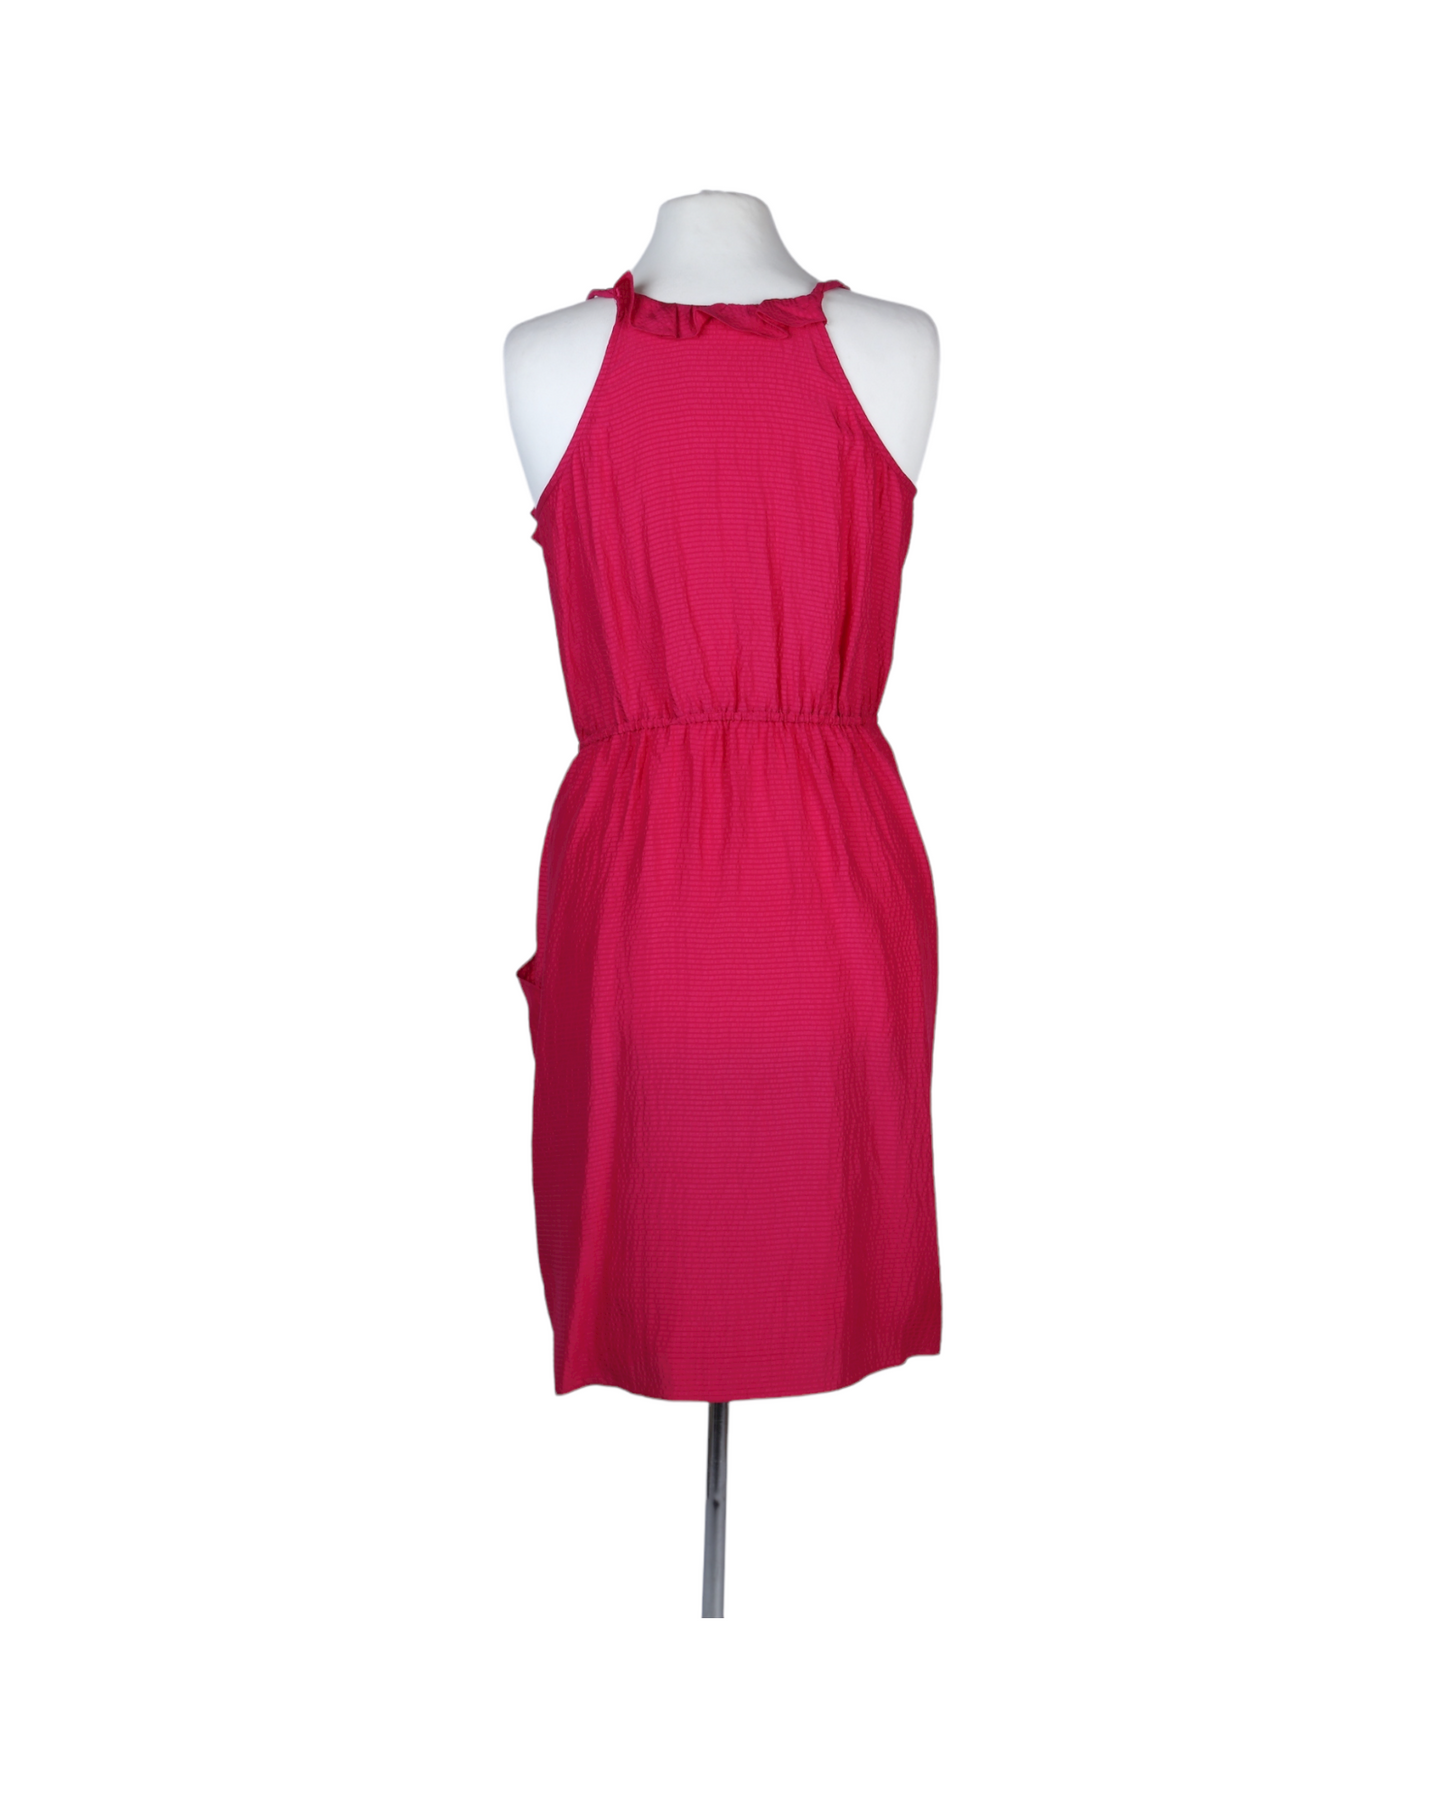 فستان قصير كاجوال بلون التوت الأحمر مع كشاكش من متجر ريبيكا تايلور